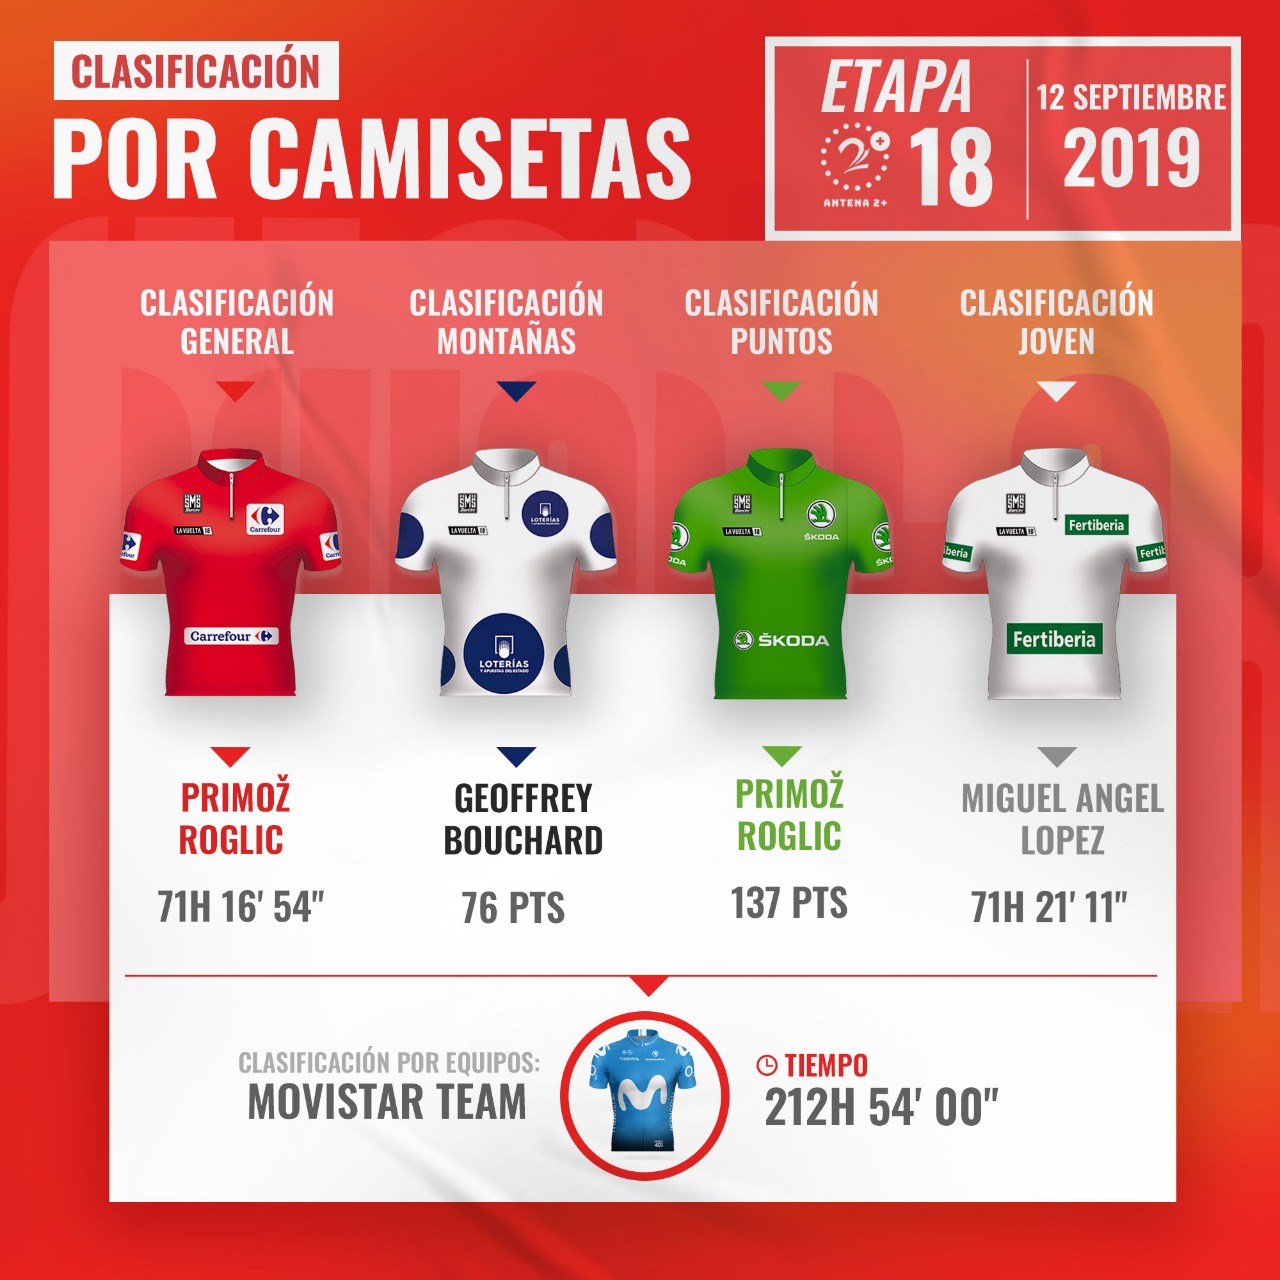 Clasificación tras etapa 18 de la Vuelta a España